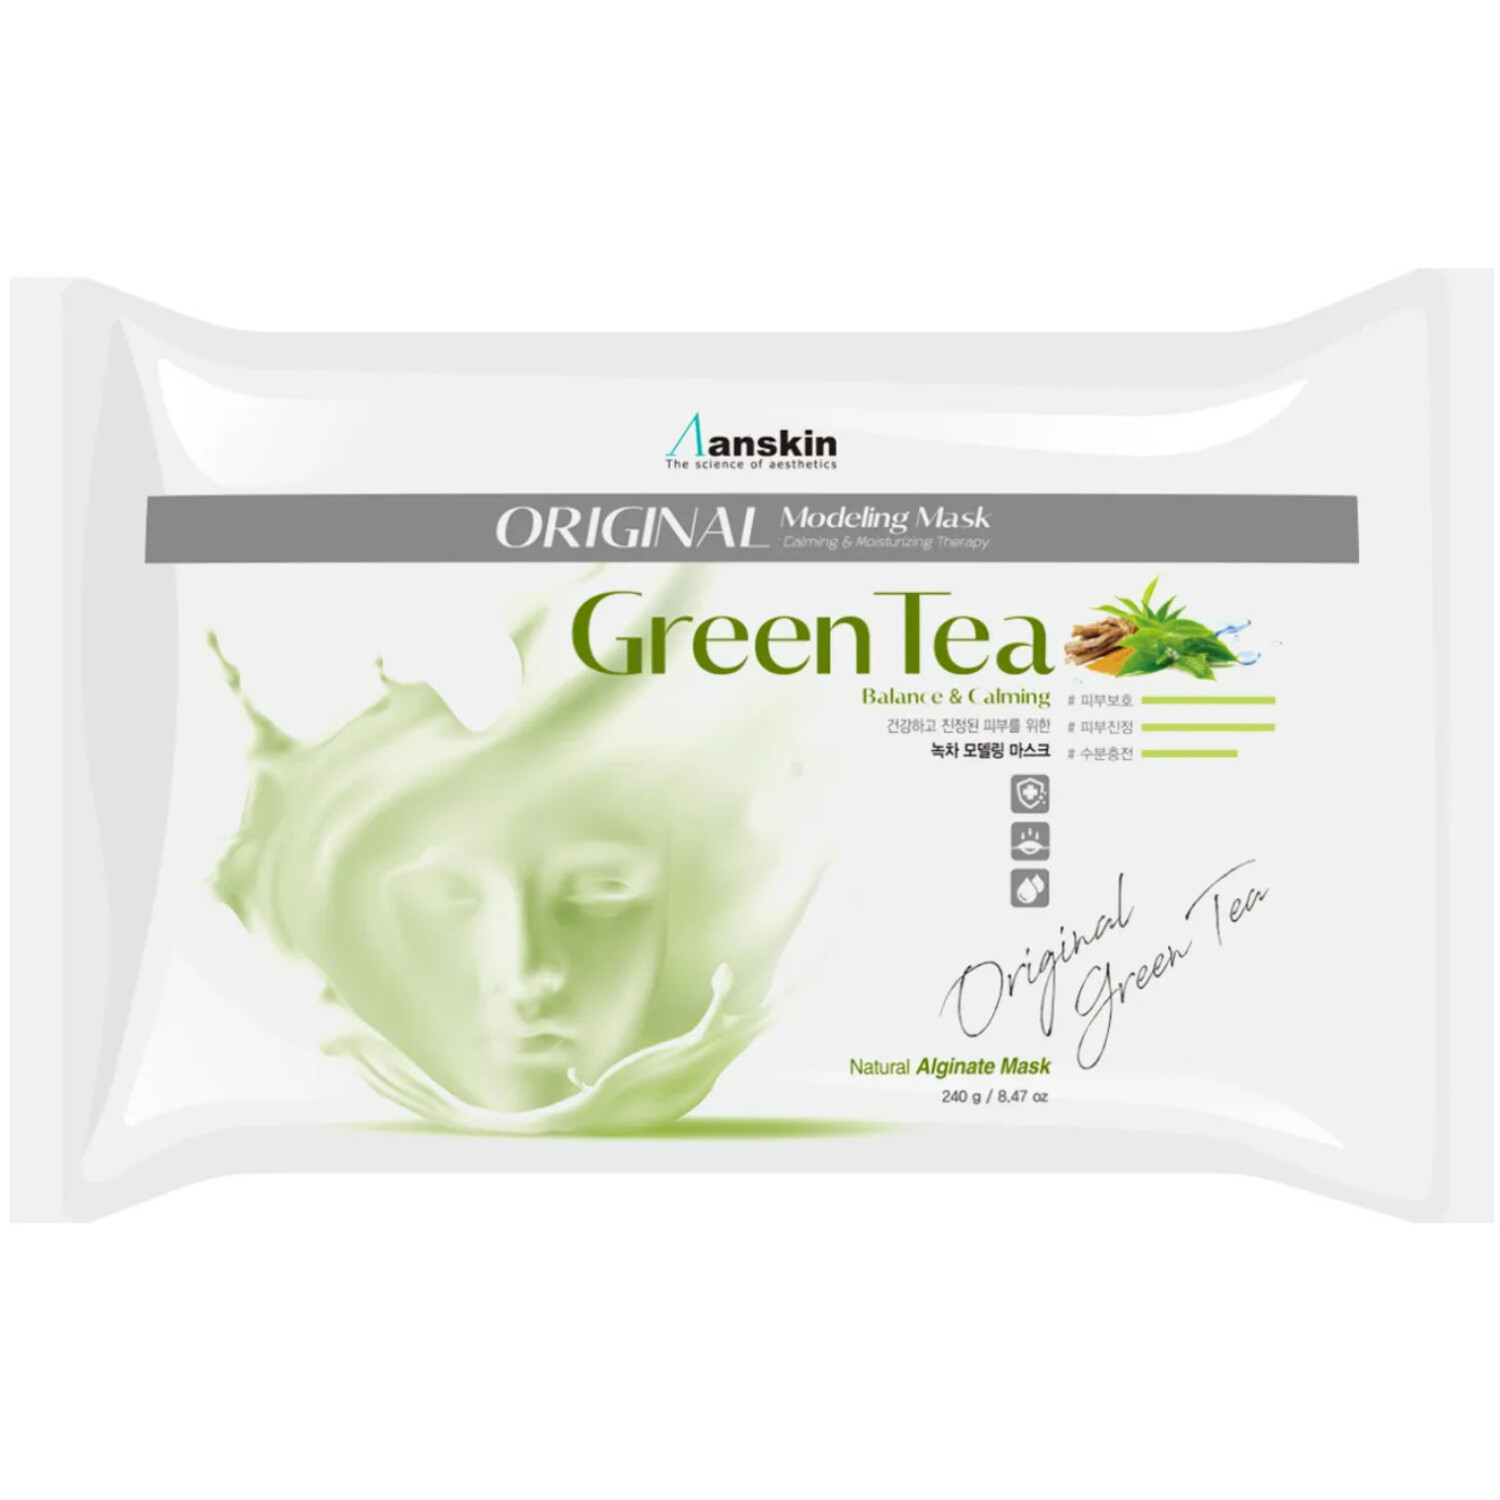 Anskin Green Tea Modeling mask refill Альгинатная маска для чувствительной кожи, 240г. / 791680